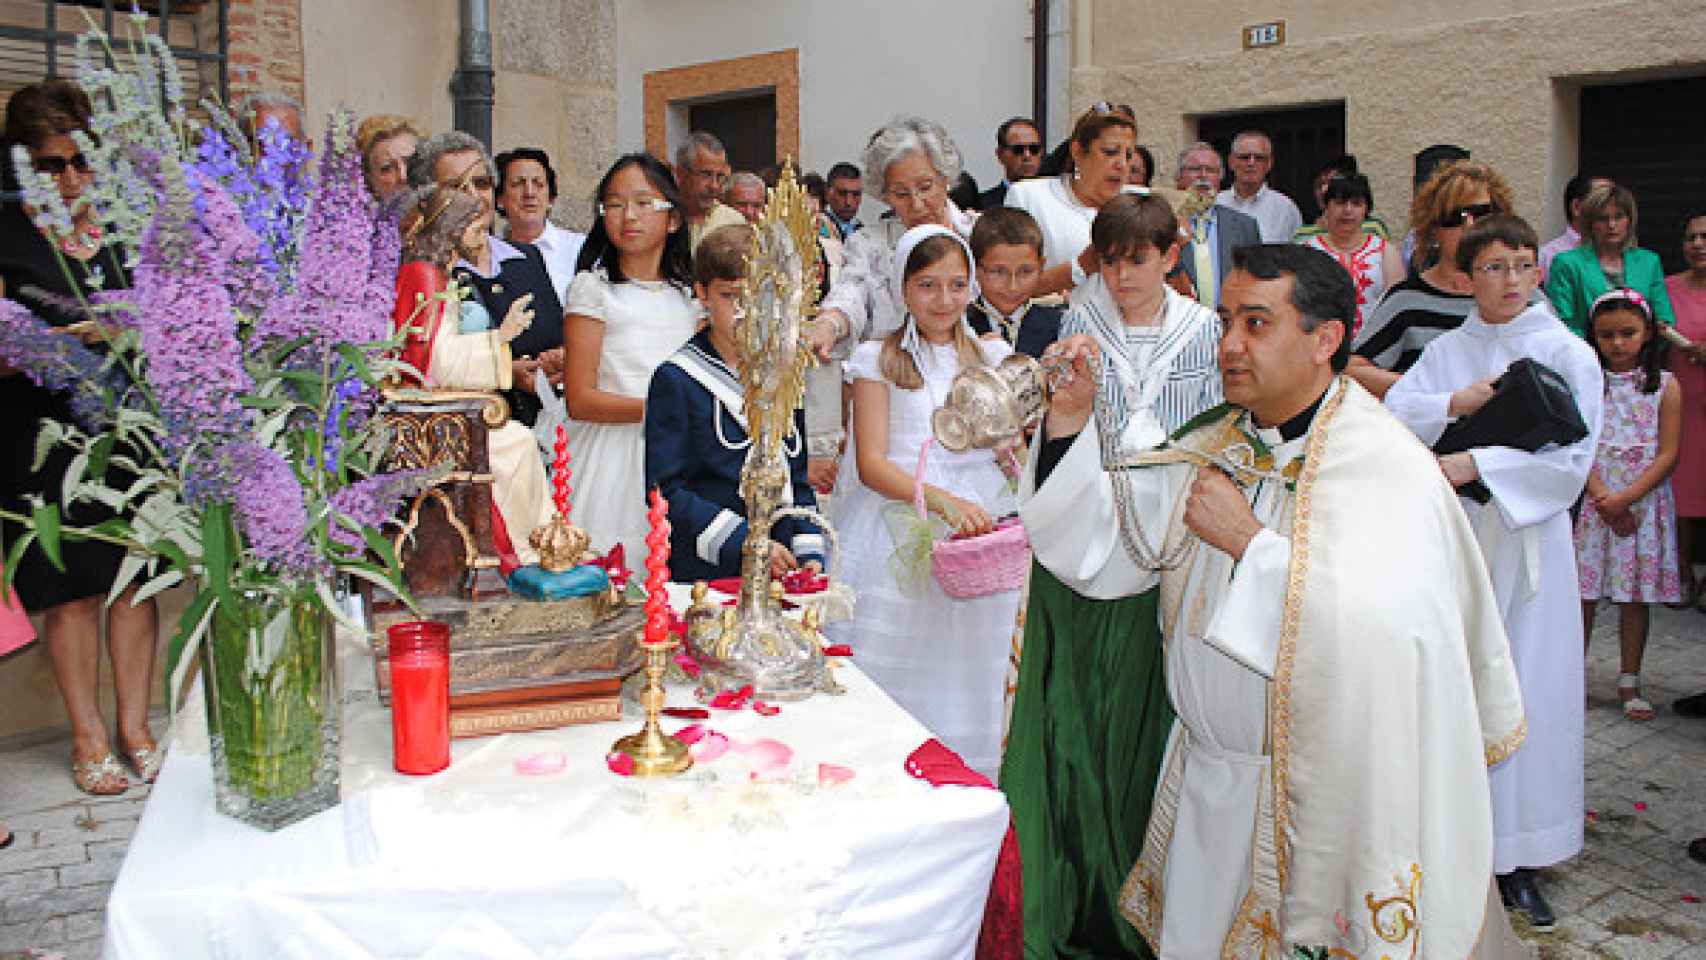 Procesión del Corpus de Ledesma. Ritos religiosos en las fiestas populares